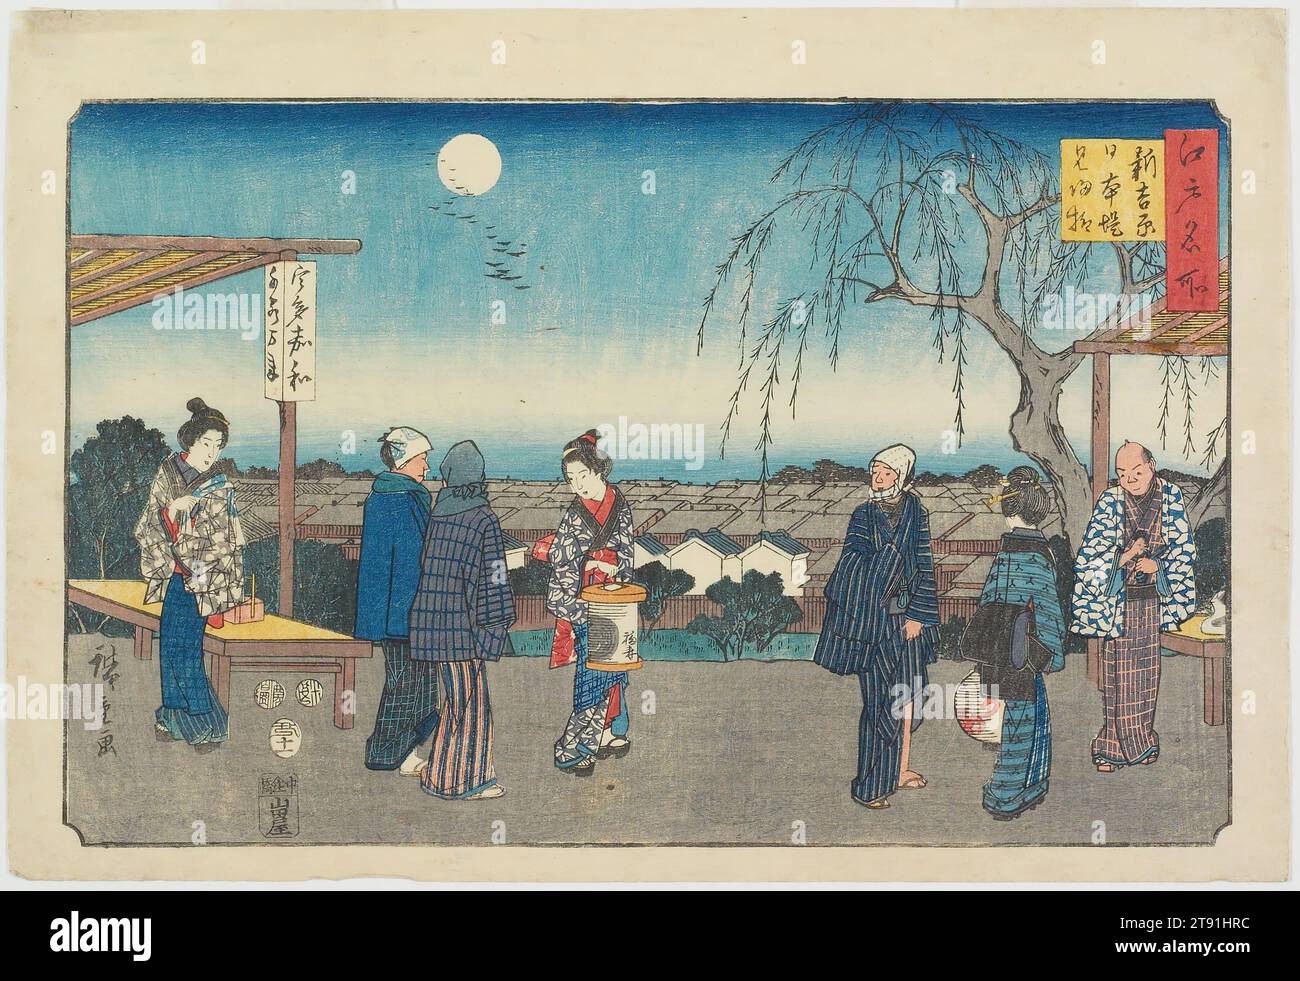 El Árbol Sauce de las Despedidas a los Invitados en el Embankment Nihon en el Nuevo Yoshiwara, 1853, 11mo mes, Utagawa Hiroshige; Editorial: Yamadaya Shōjirō, japonés, 1797 - 1858, 8 9/16 x 13 7/16 in. (21,8 x 34,2 cm) (imagen, horizontal ōban), impresión en madera (nishiki-e); tinta y color sobre papel, Japón, siglo XIX Foto de stock